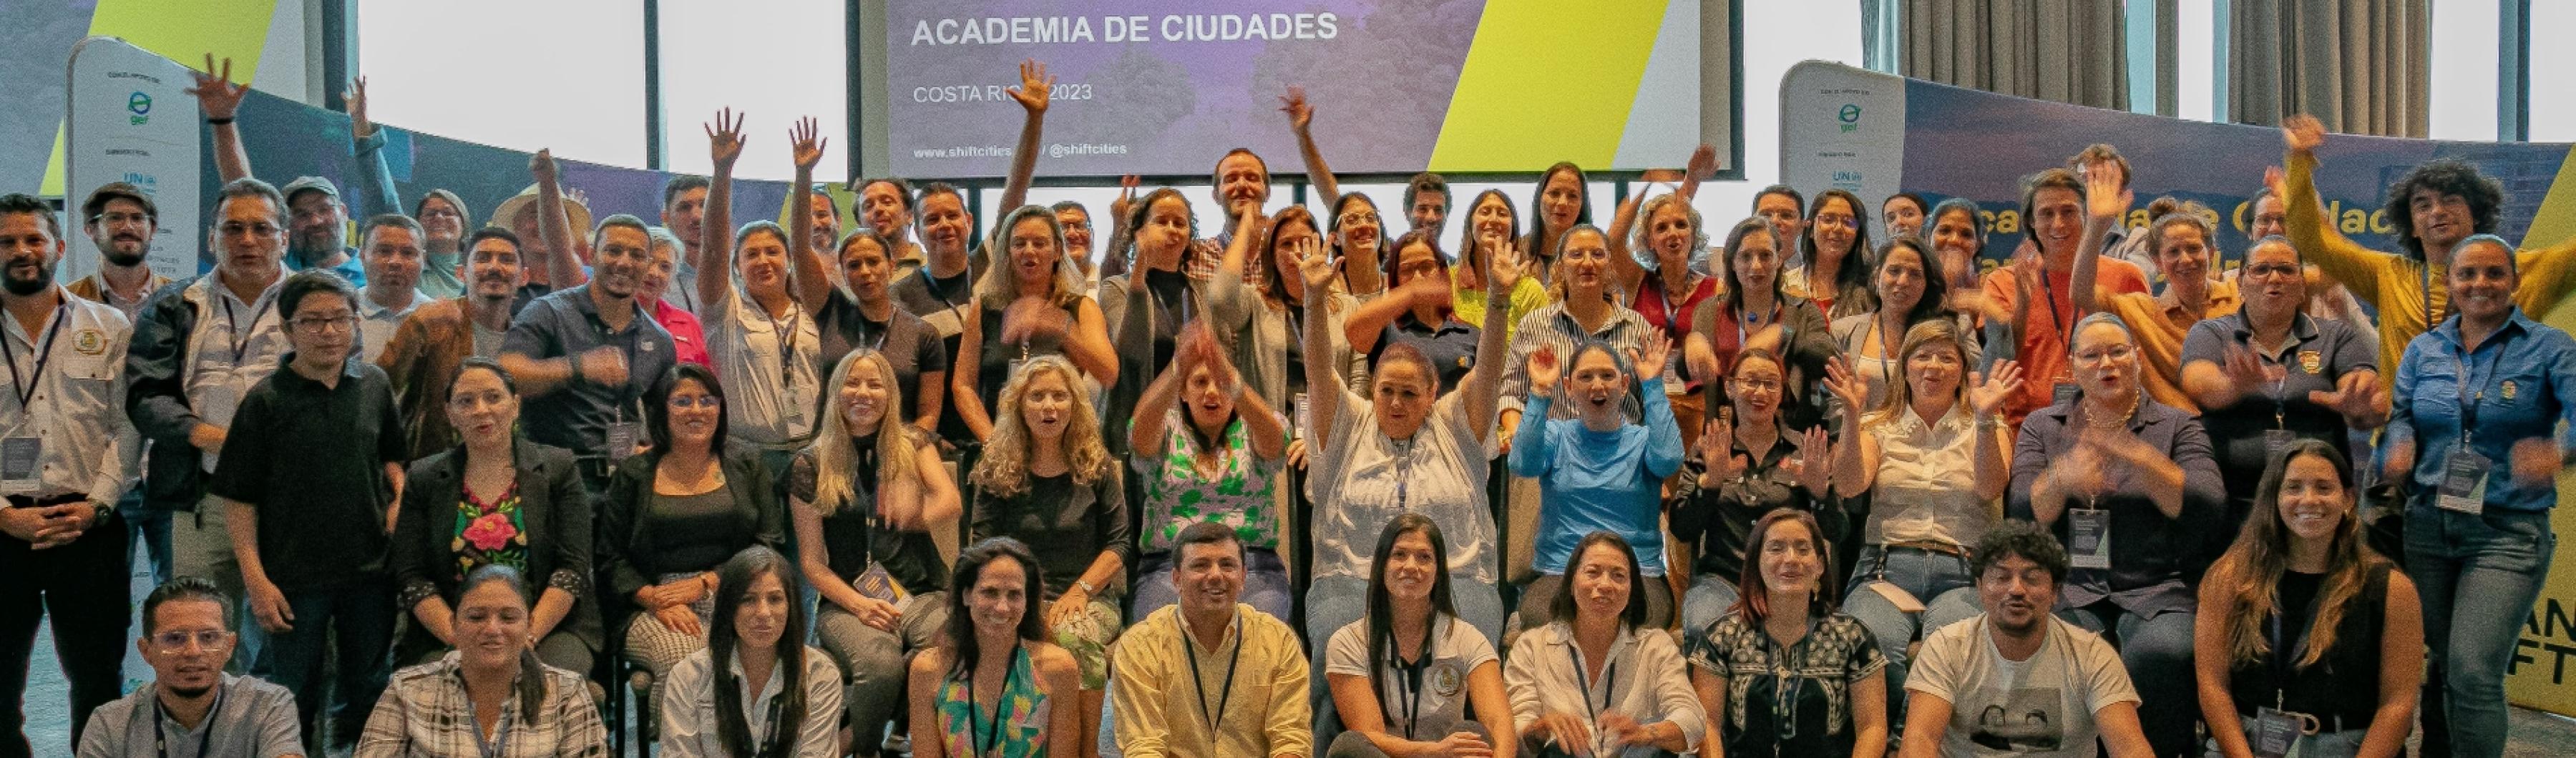 UrbanShift Participantes y organizadores de Costa Rica City Academy